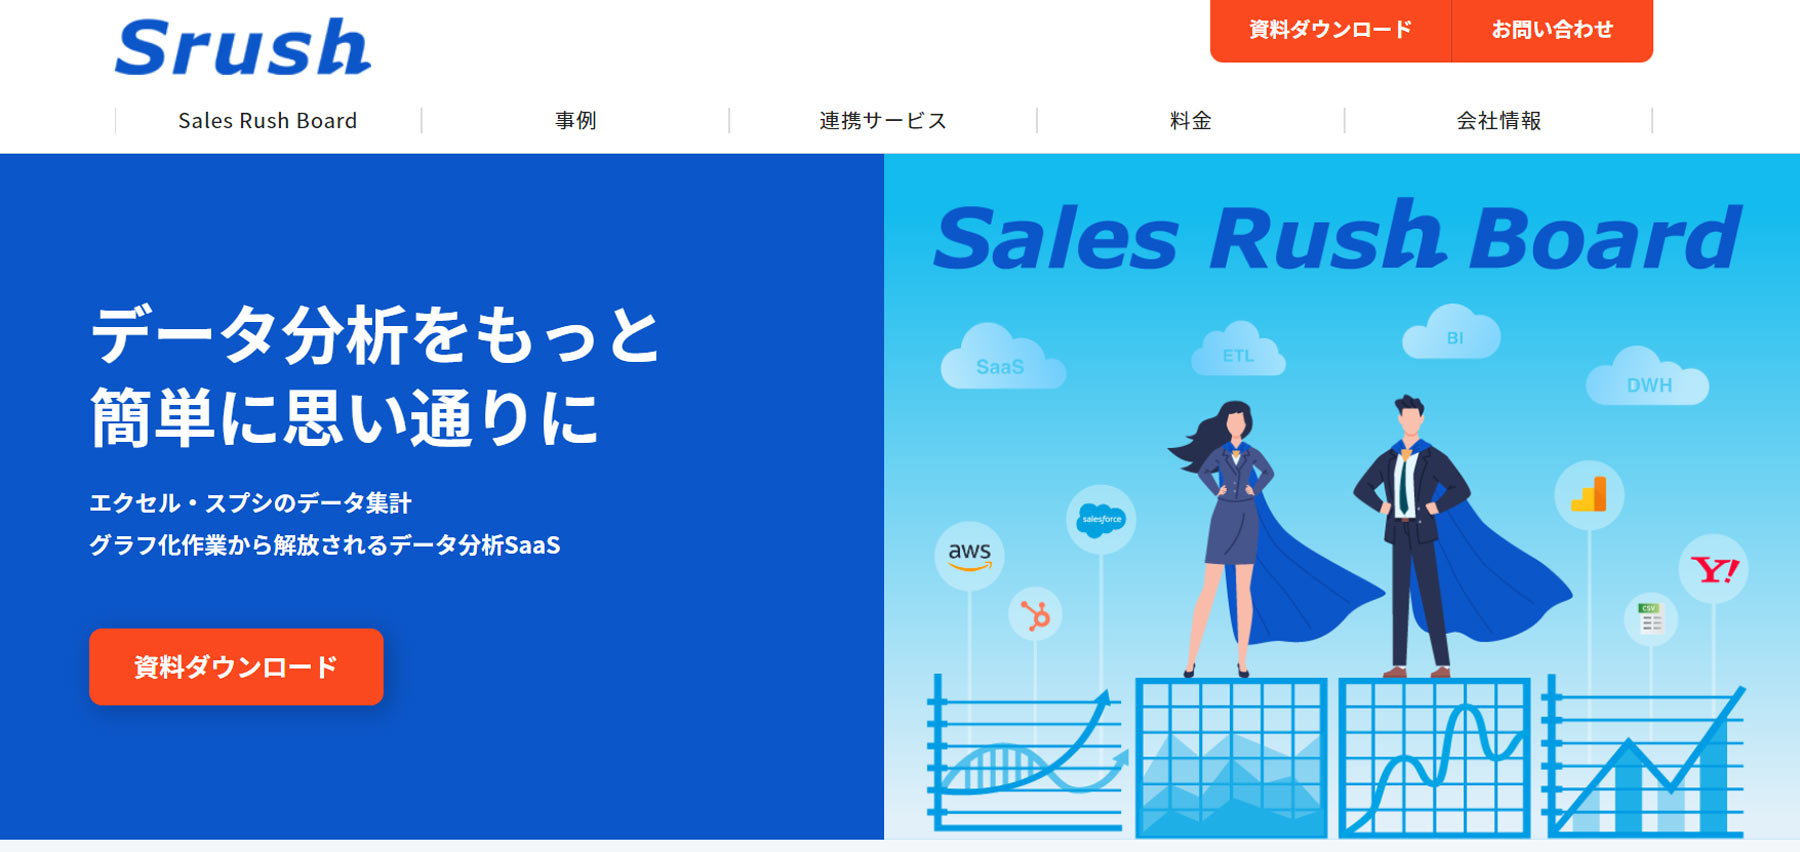 Sales Rush Board公式Webサイト